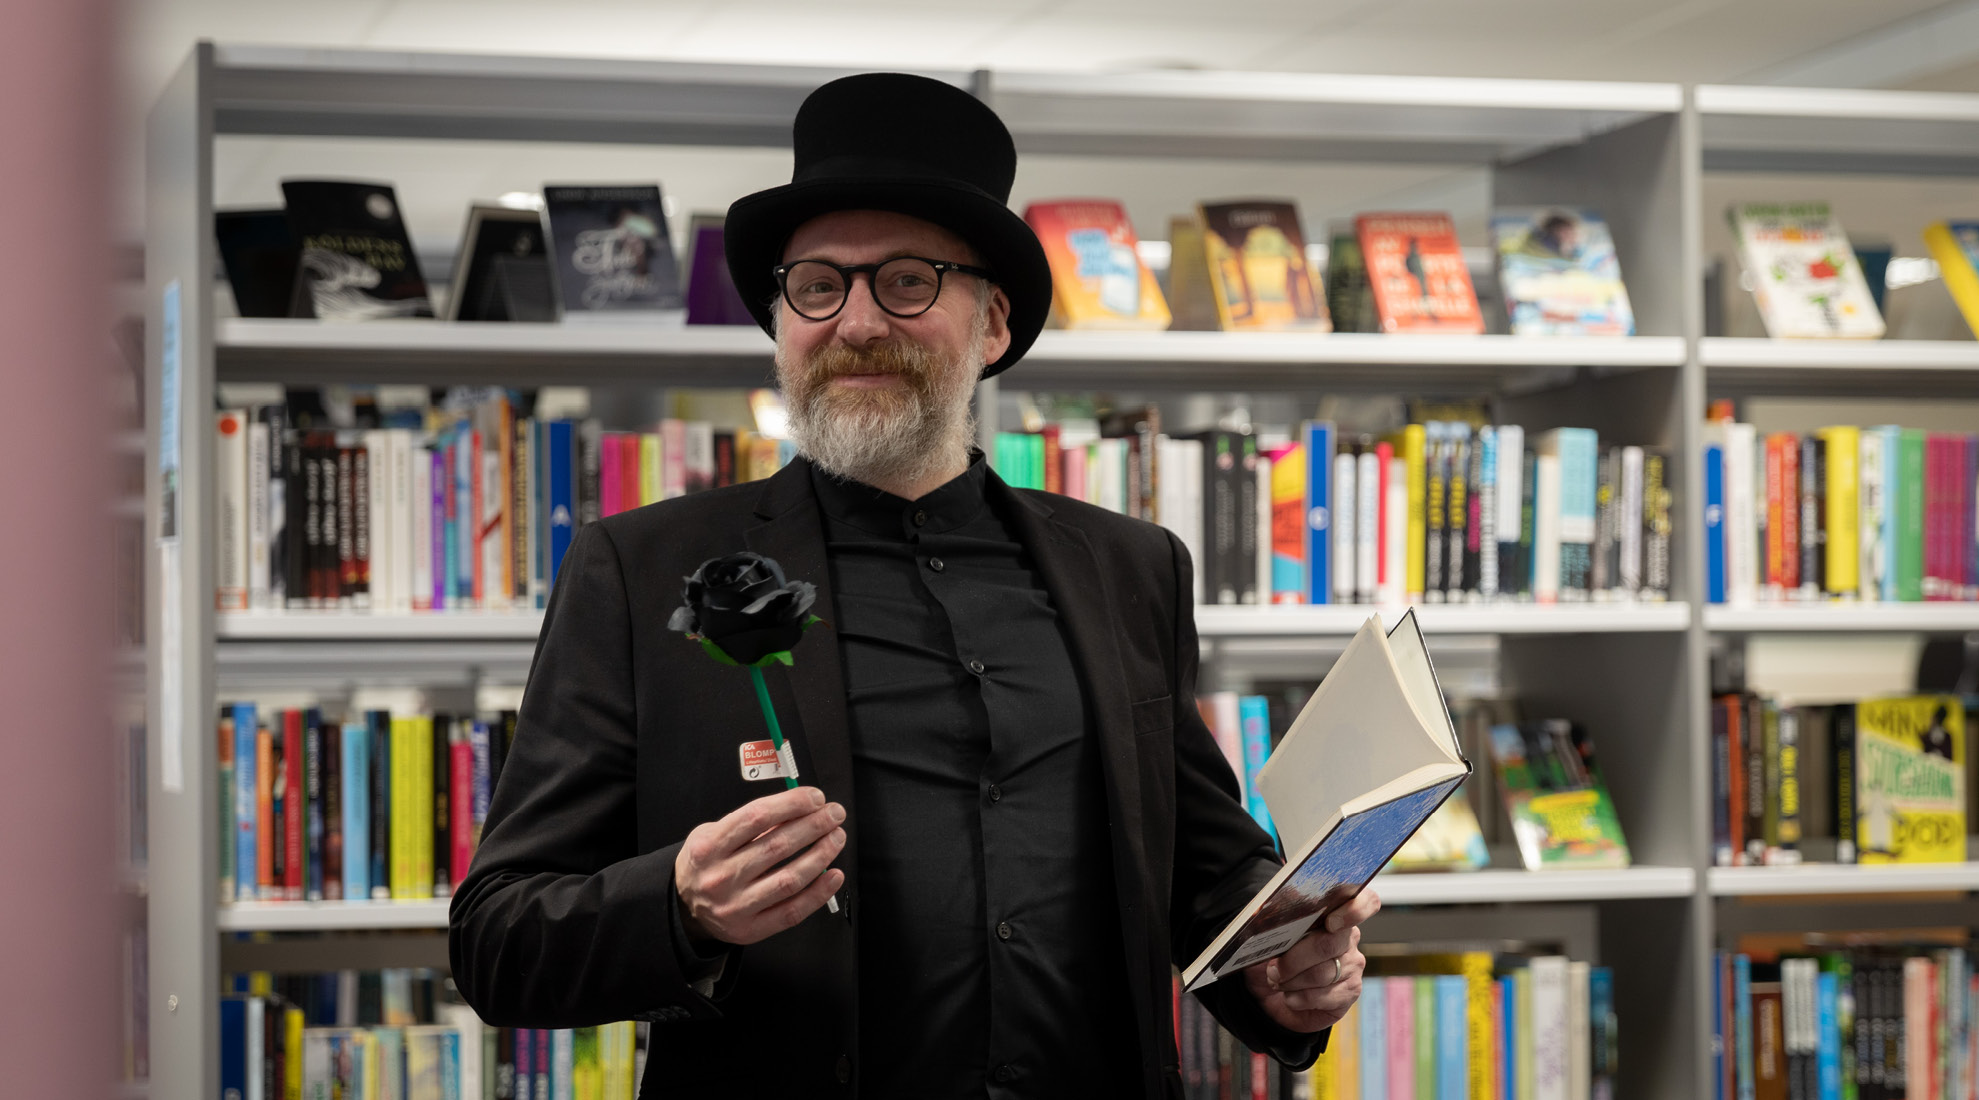 Erling Persson står bland böcker. Han har en svart hatt och håller i en ros och en bok.